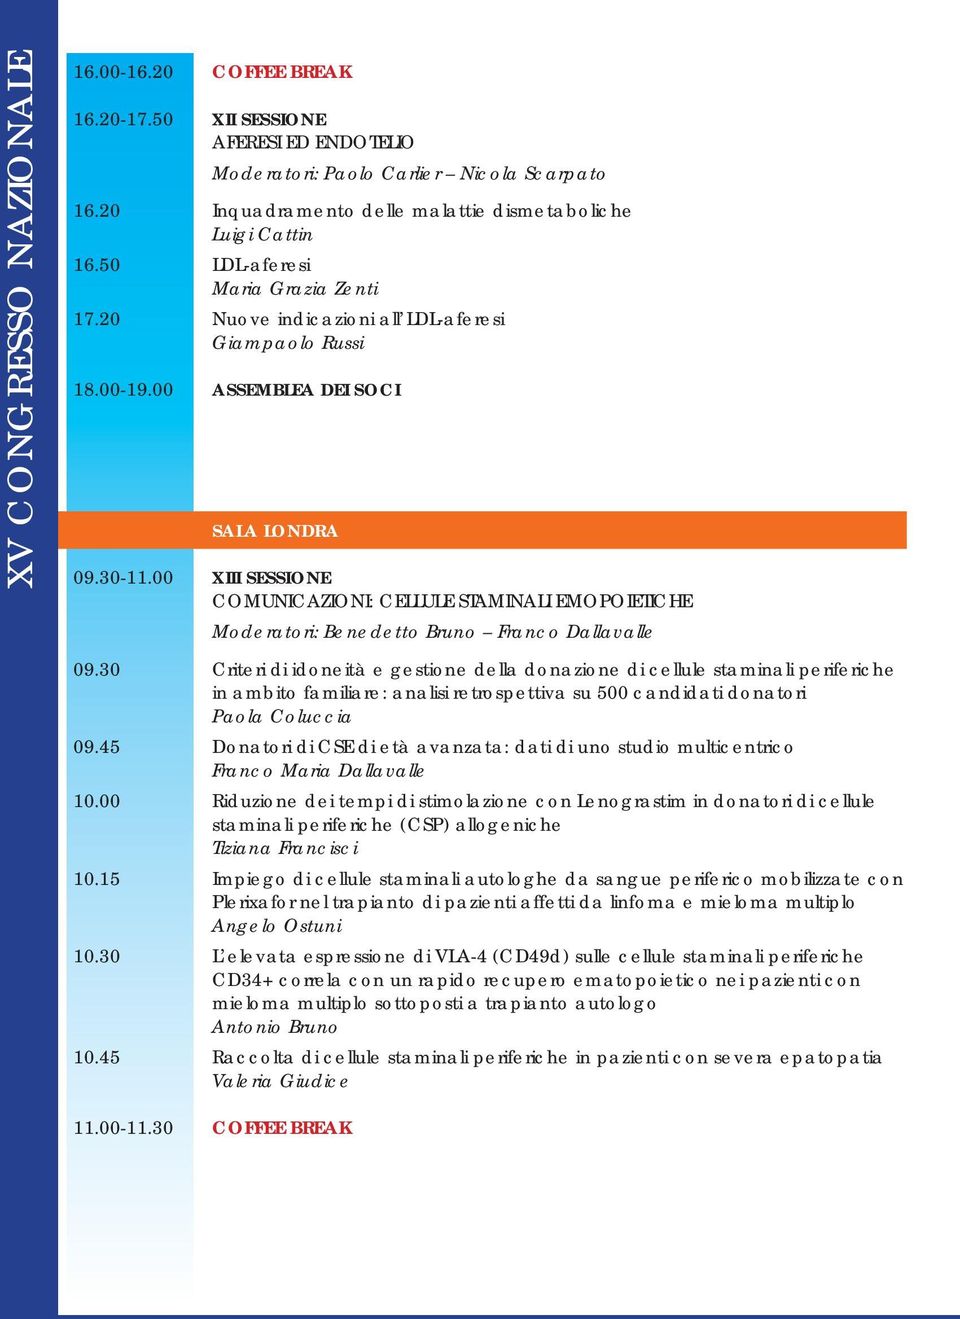 30-11.00 XIII SESSIONE COMUNICAZIONI: CELLULE STAMINALI EMOPOIETICHE Moderatori: Benedetto Bruno Franco Dallavalle 09.